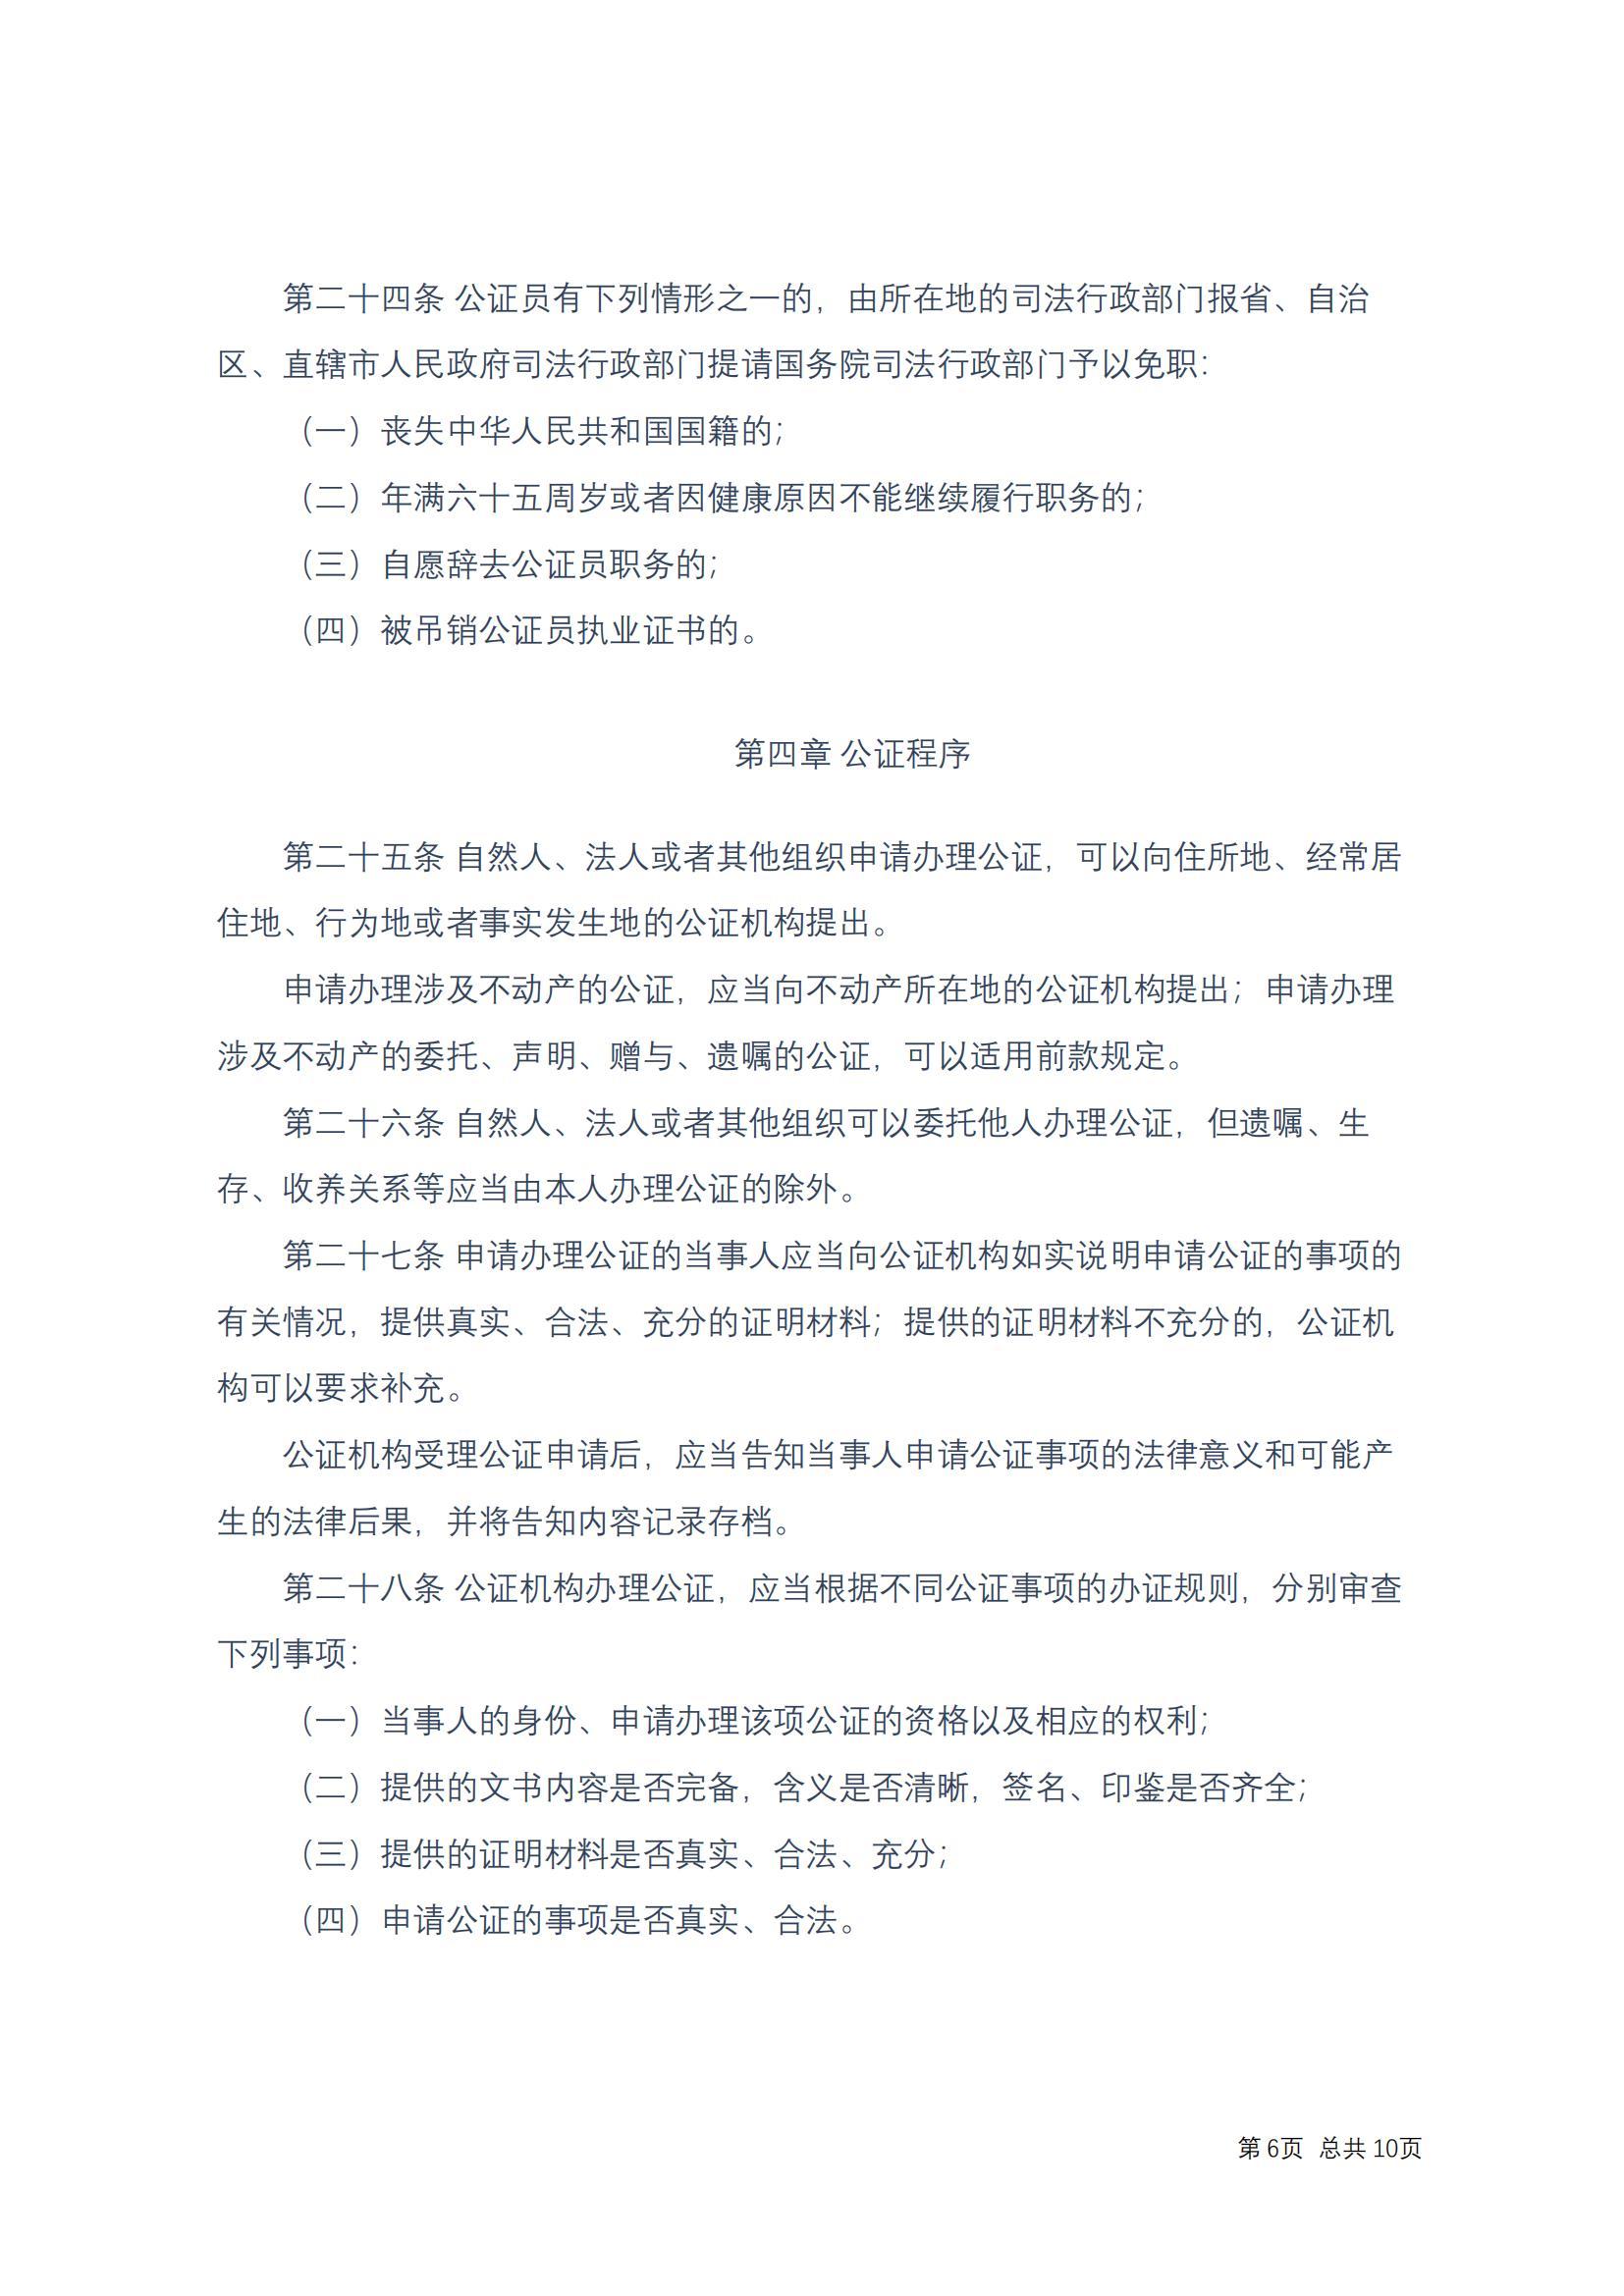 中华人民共和国公证法(2017修正)修改过_05